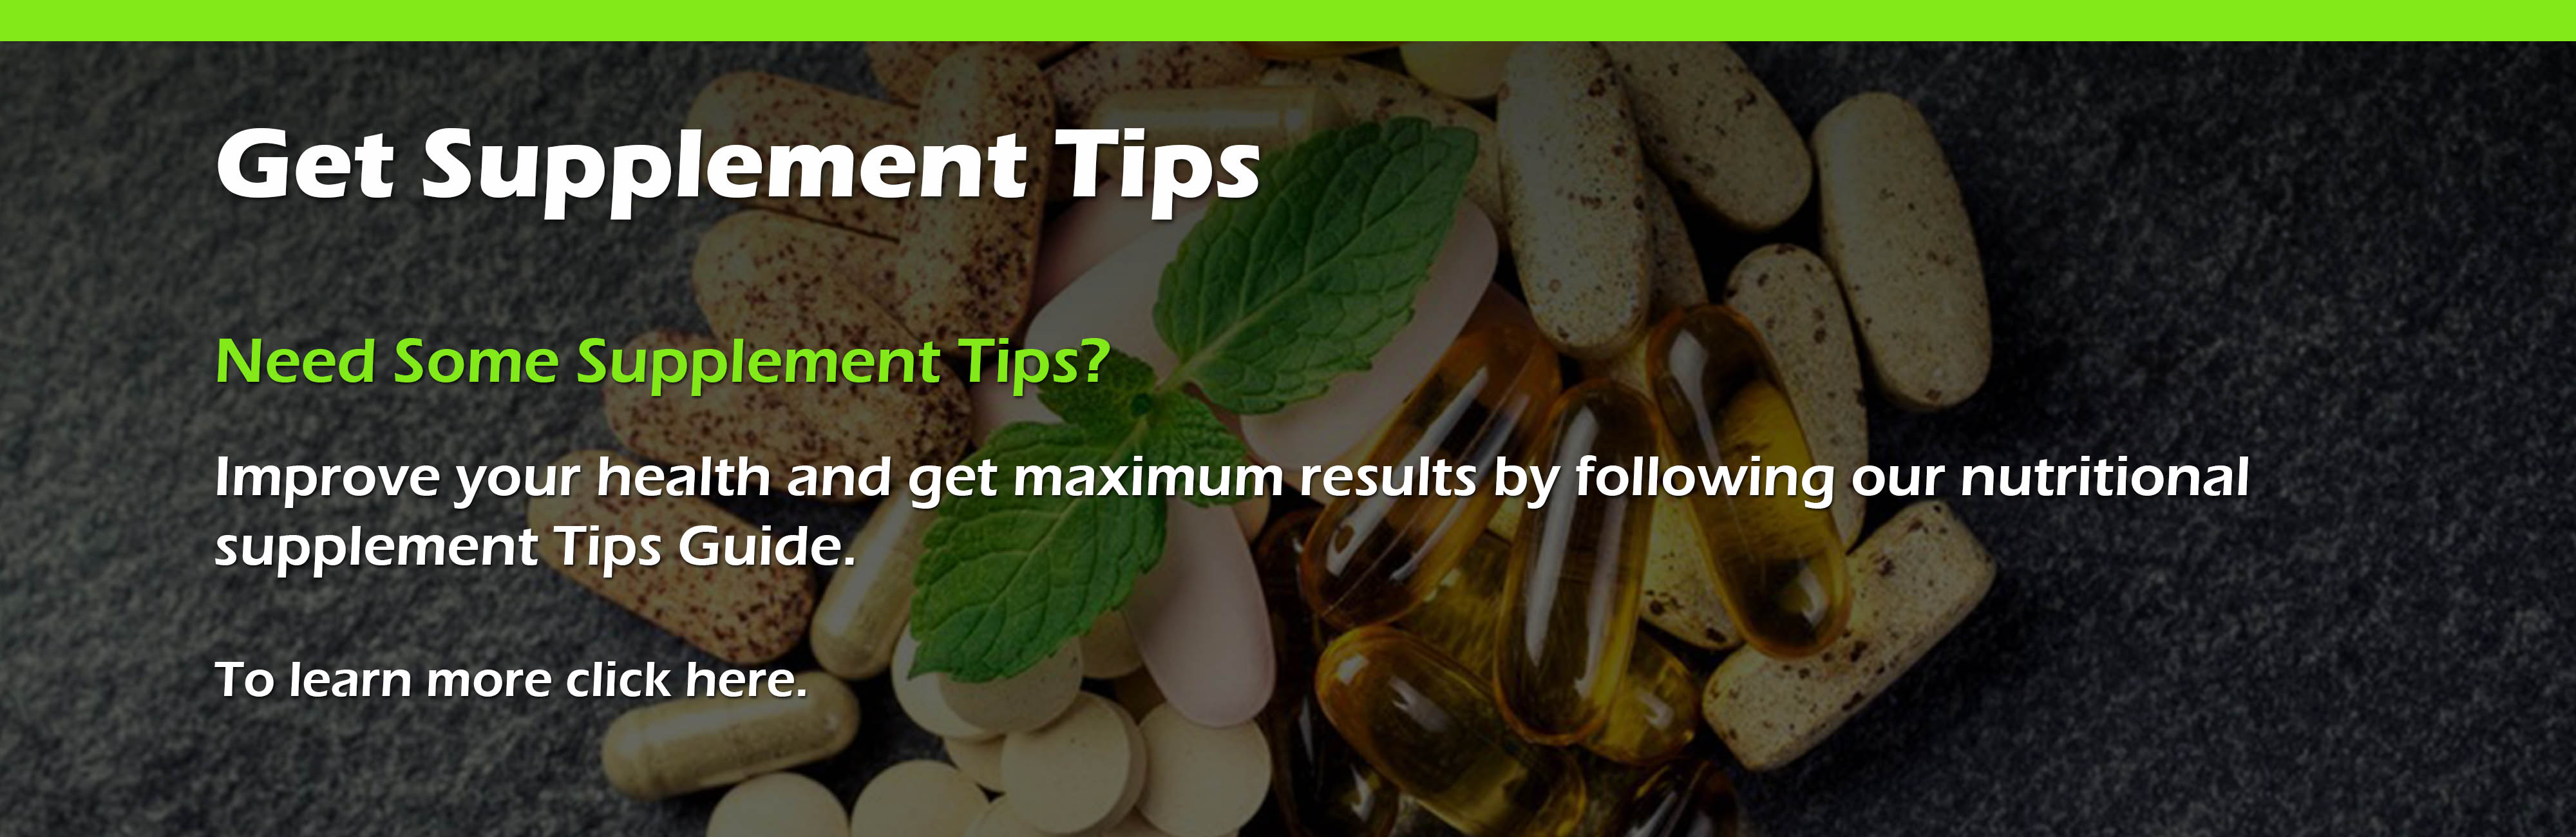 Get Supplement Tips